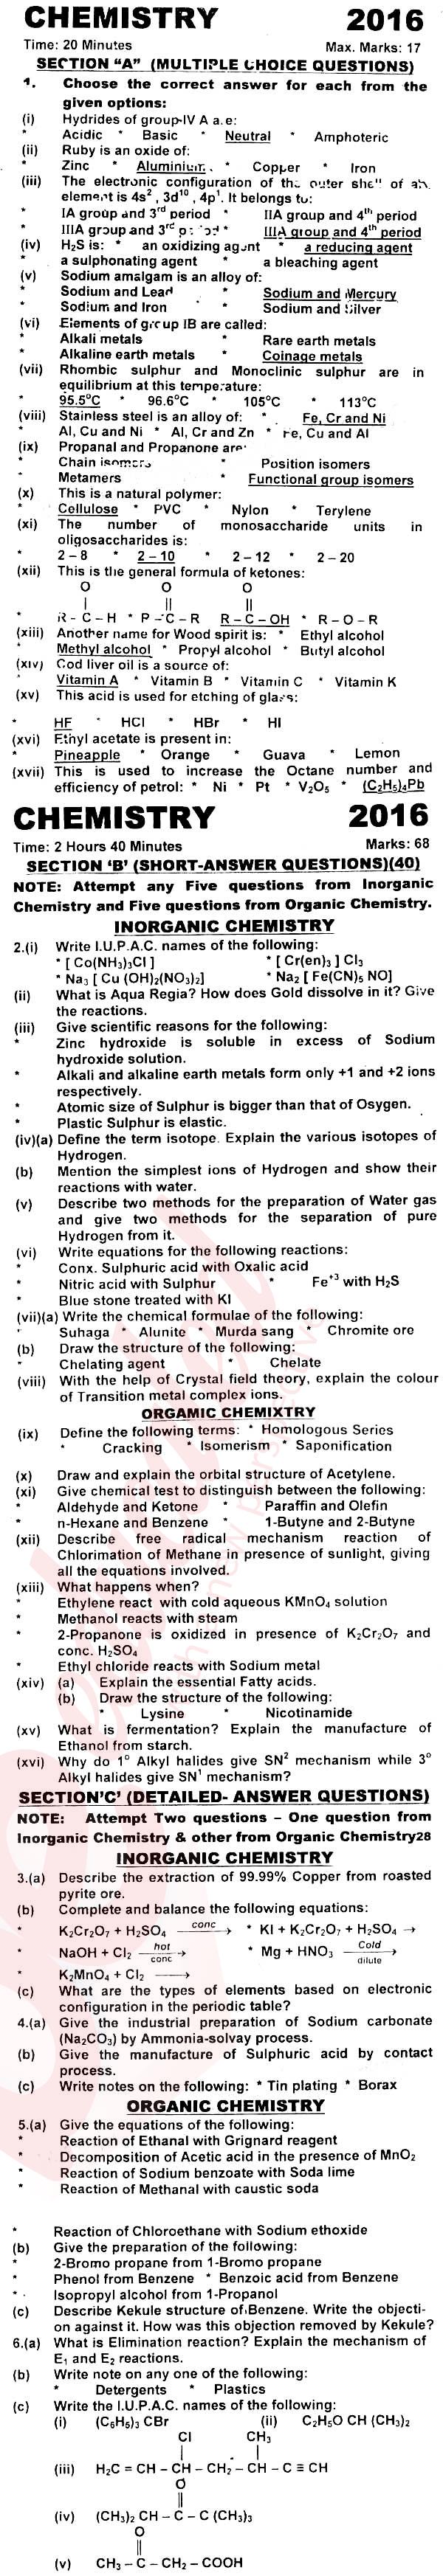 Chemistry FSC Part 2 Past Paper Group 1 KPBTE 2016